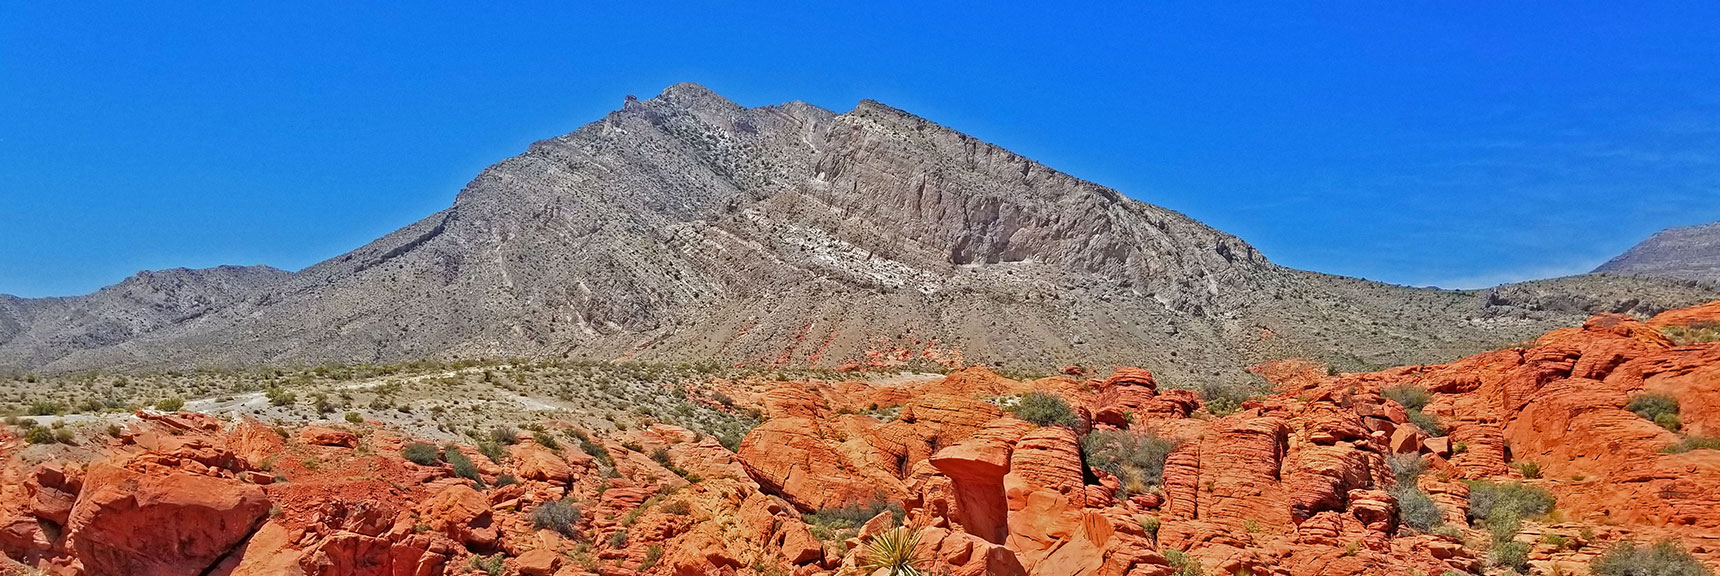 Looking Back Toward Damsel Peak | Little Red Rock Las Vegas, Nevada, Near La Madre Mountains Wilderness